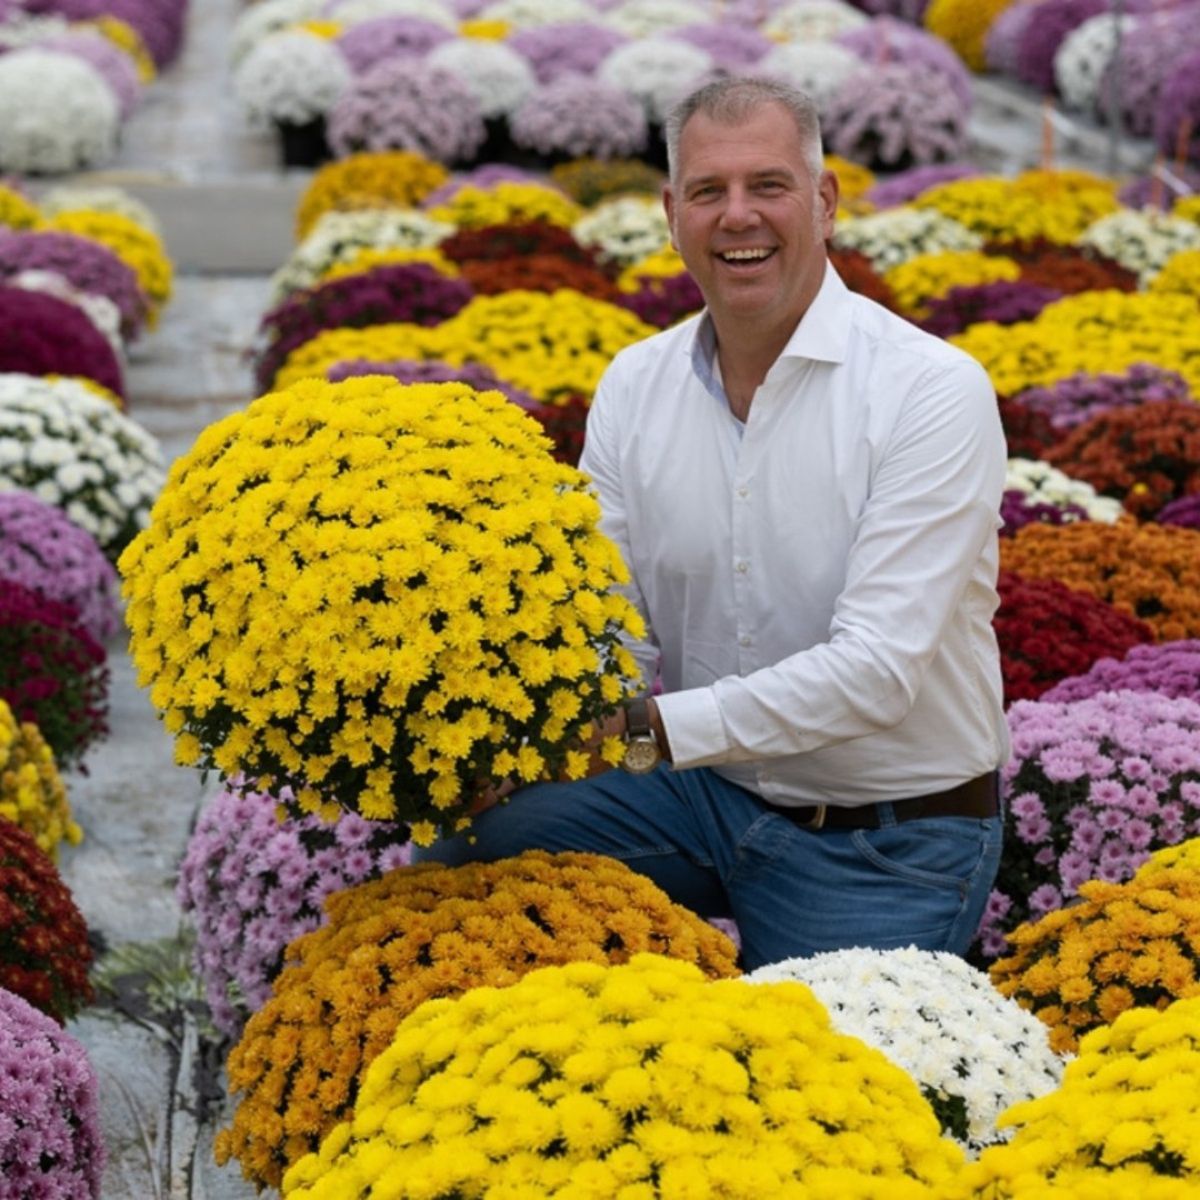 Royal Van Zanten chrysanthemum specialists on Thursd